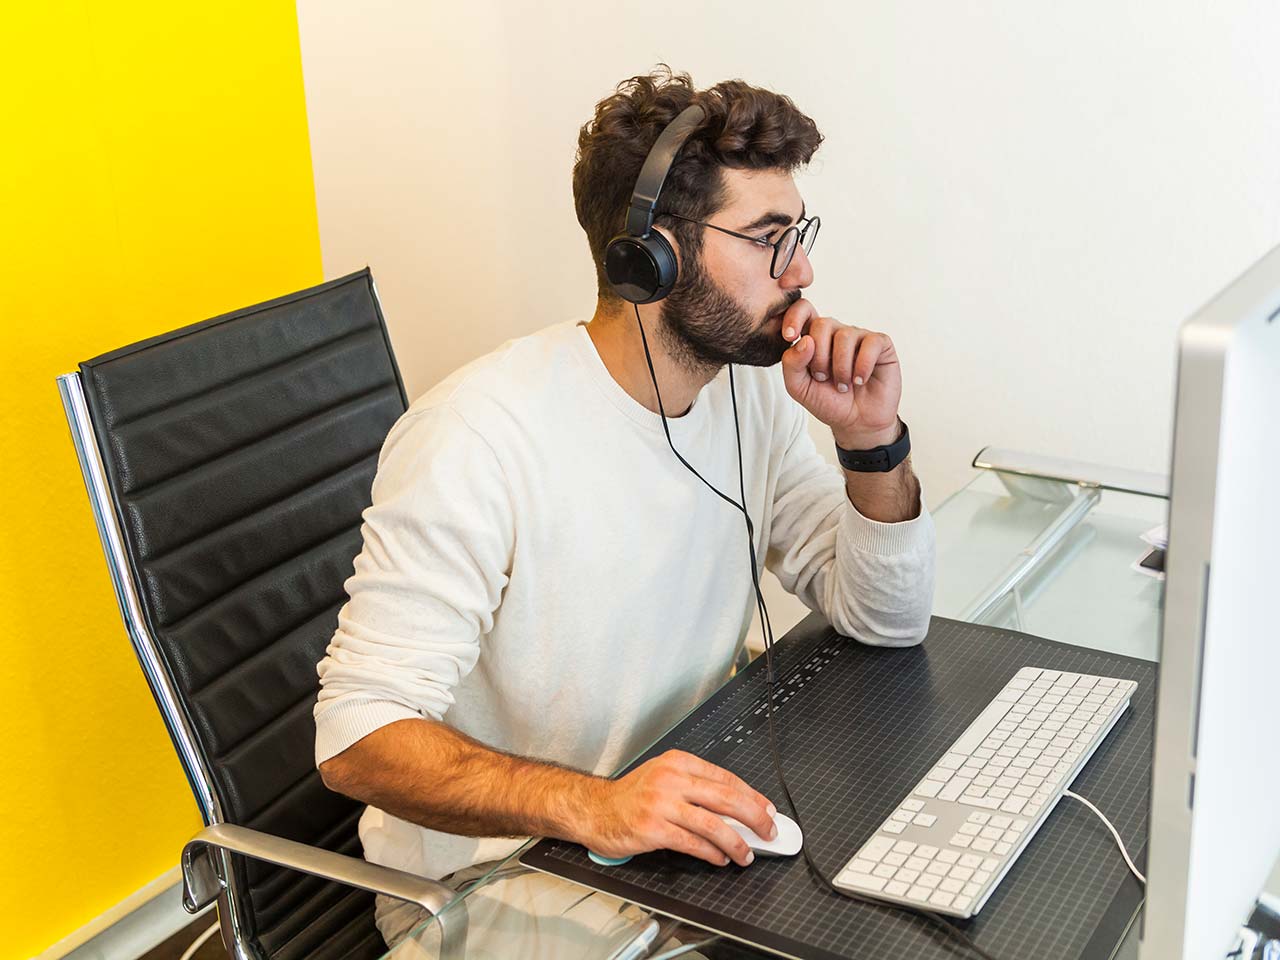 Man working at desk wearing headset.